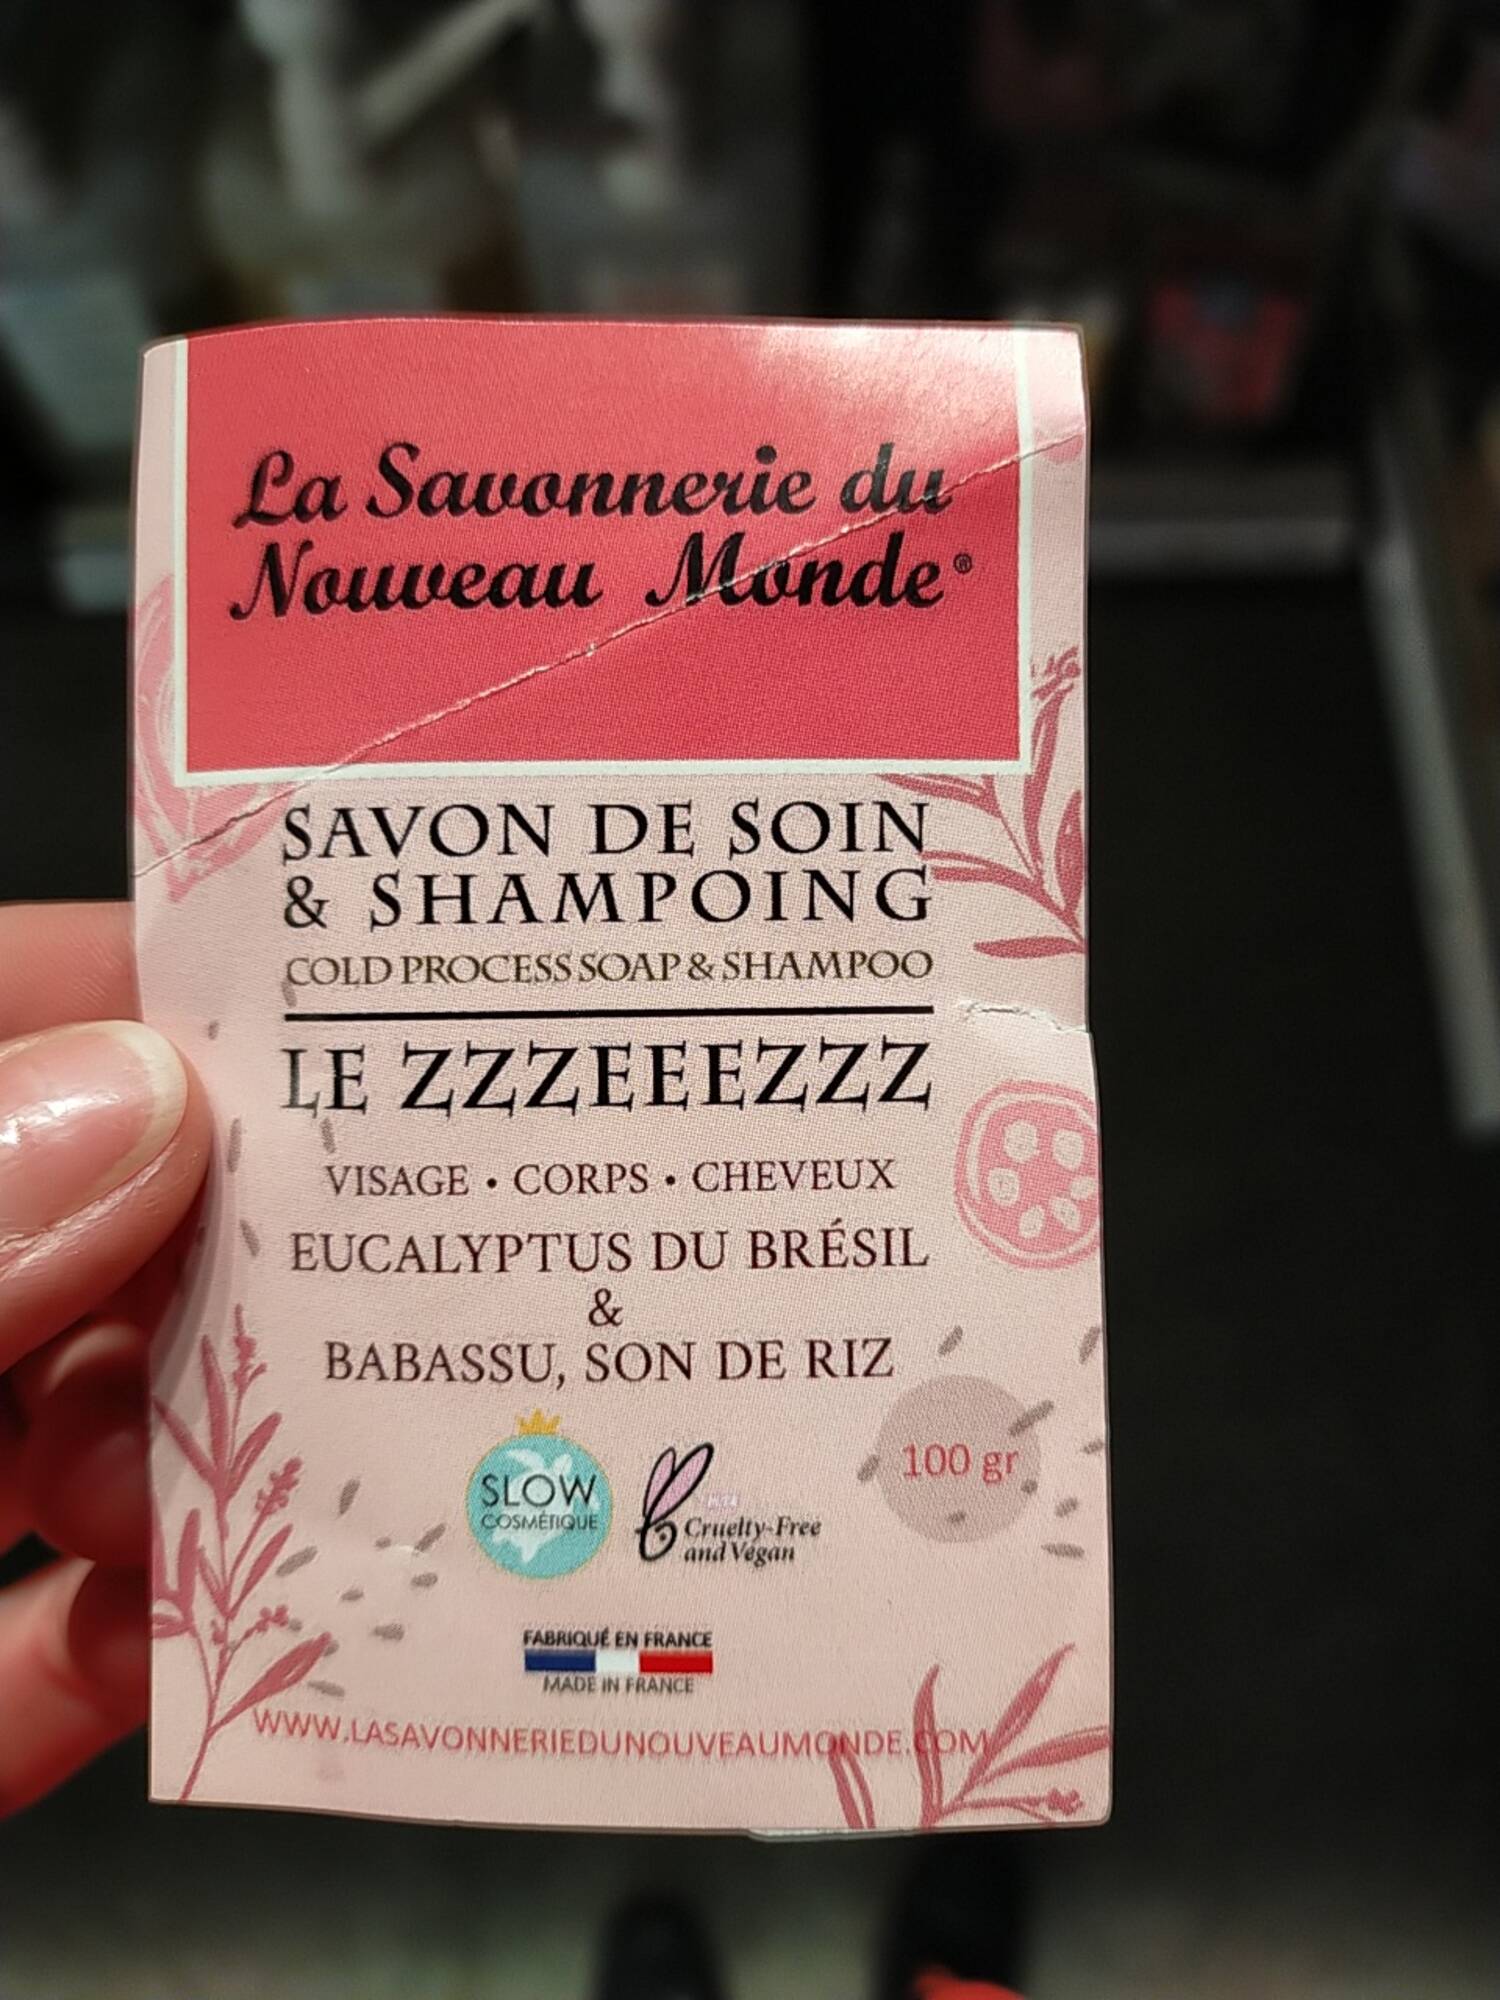 LA SAVONNERIE DU NOUVEAU MONDE - Le Zzzeeezzz - Savon de soin & shampoing